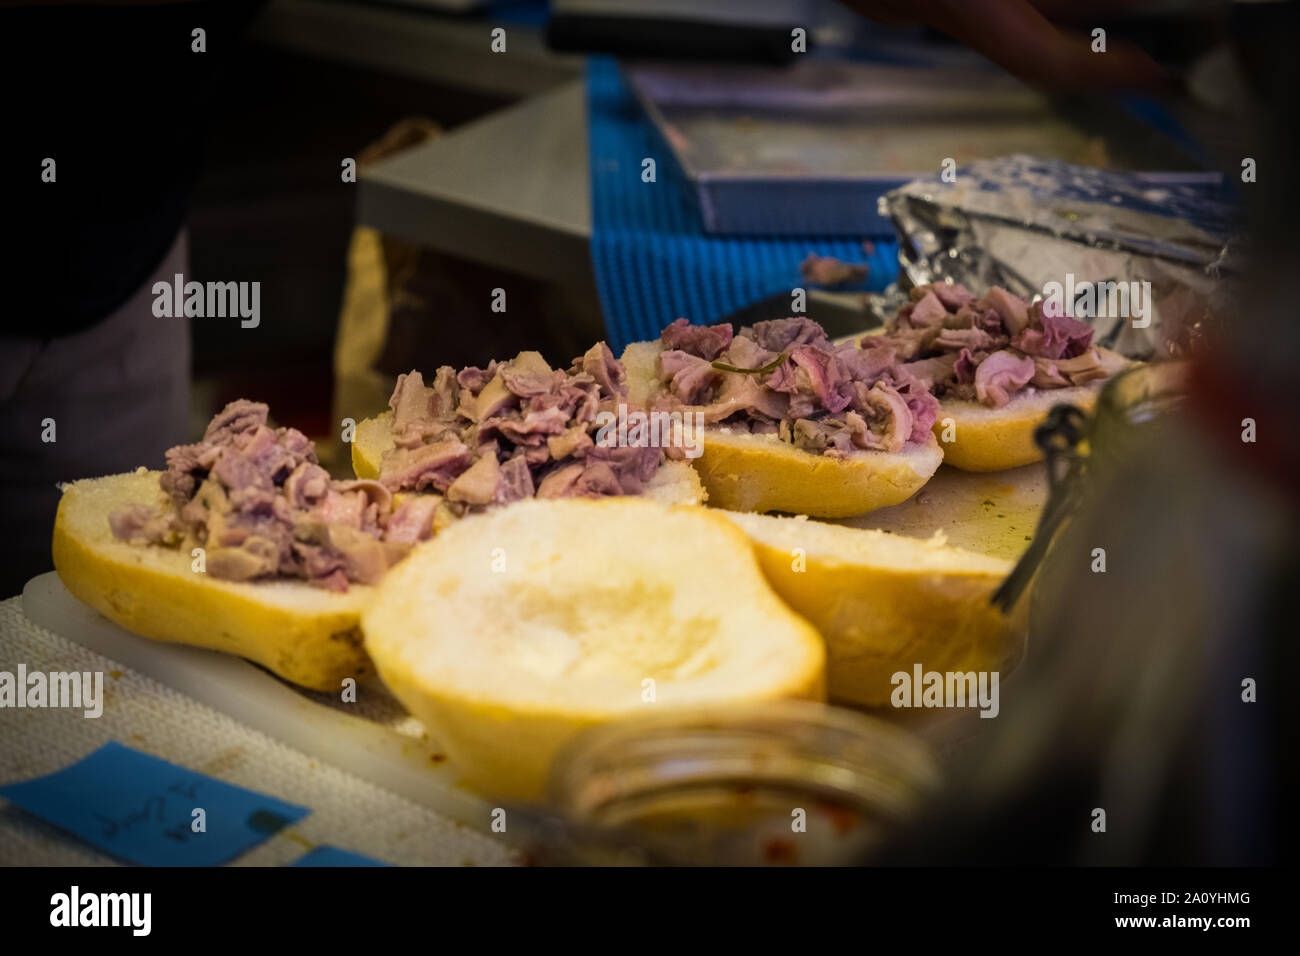 La préparation de sandwiches avec lambredotto, une alimentation de rue typique de Toscane. C'est un tripe bouilli assaisonné de sauce persil et Huile épicée Banque D'Images